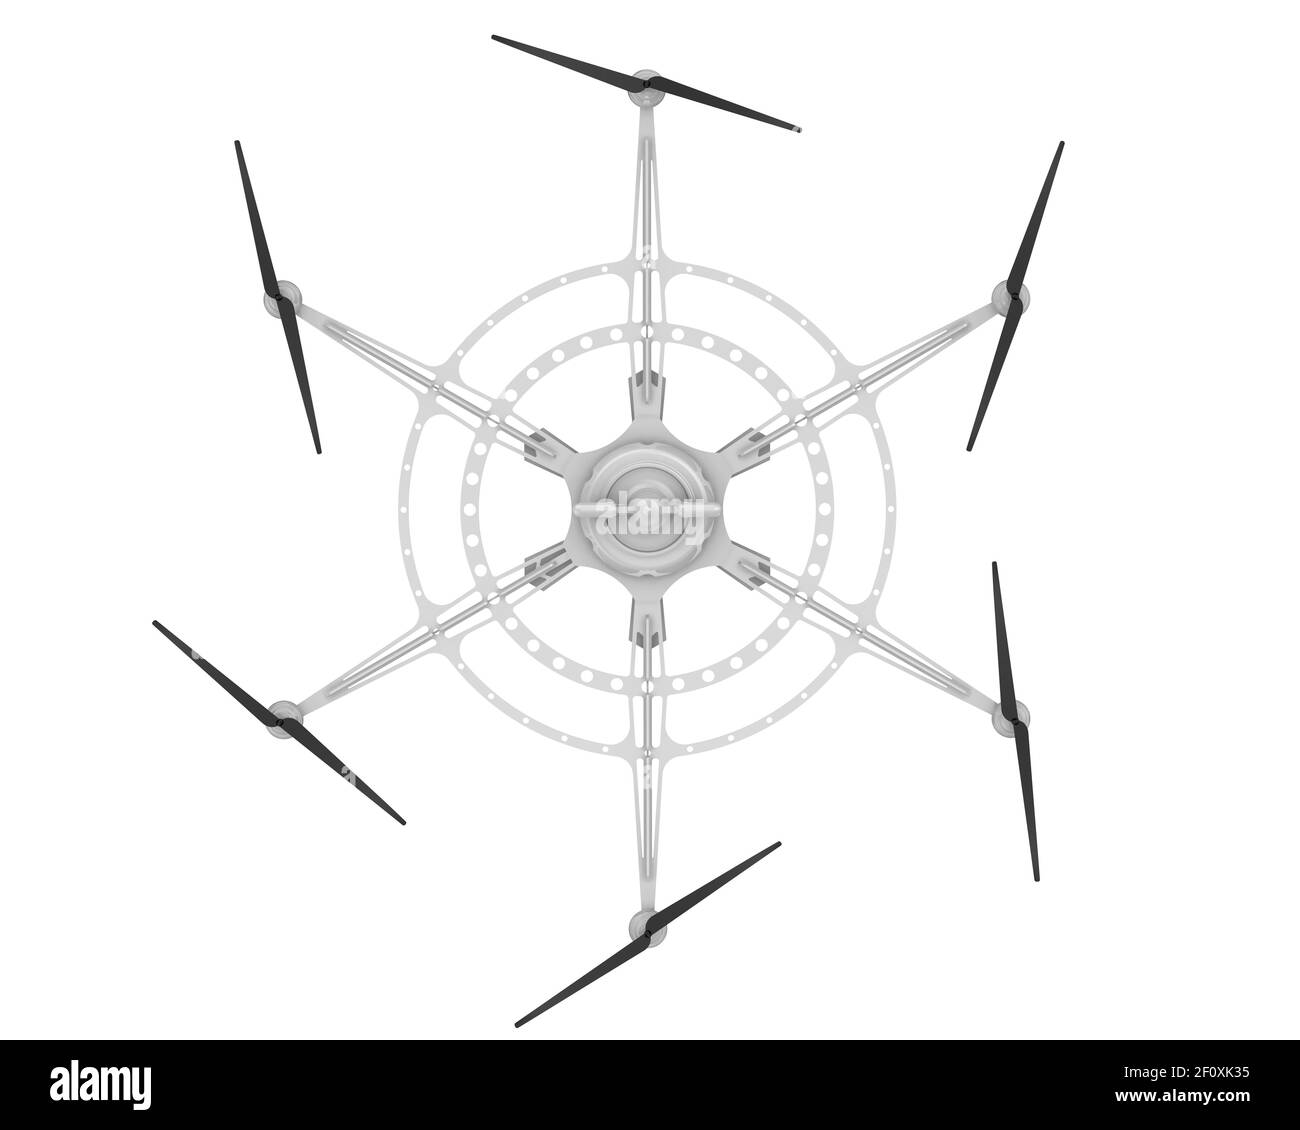 Hexacopter für die Frachtlieferung. Unbemanntes Luftfahrzeug mit sechs Propellern zur Ladungslieferung. 3D Abbildung Stockfoto